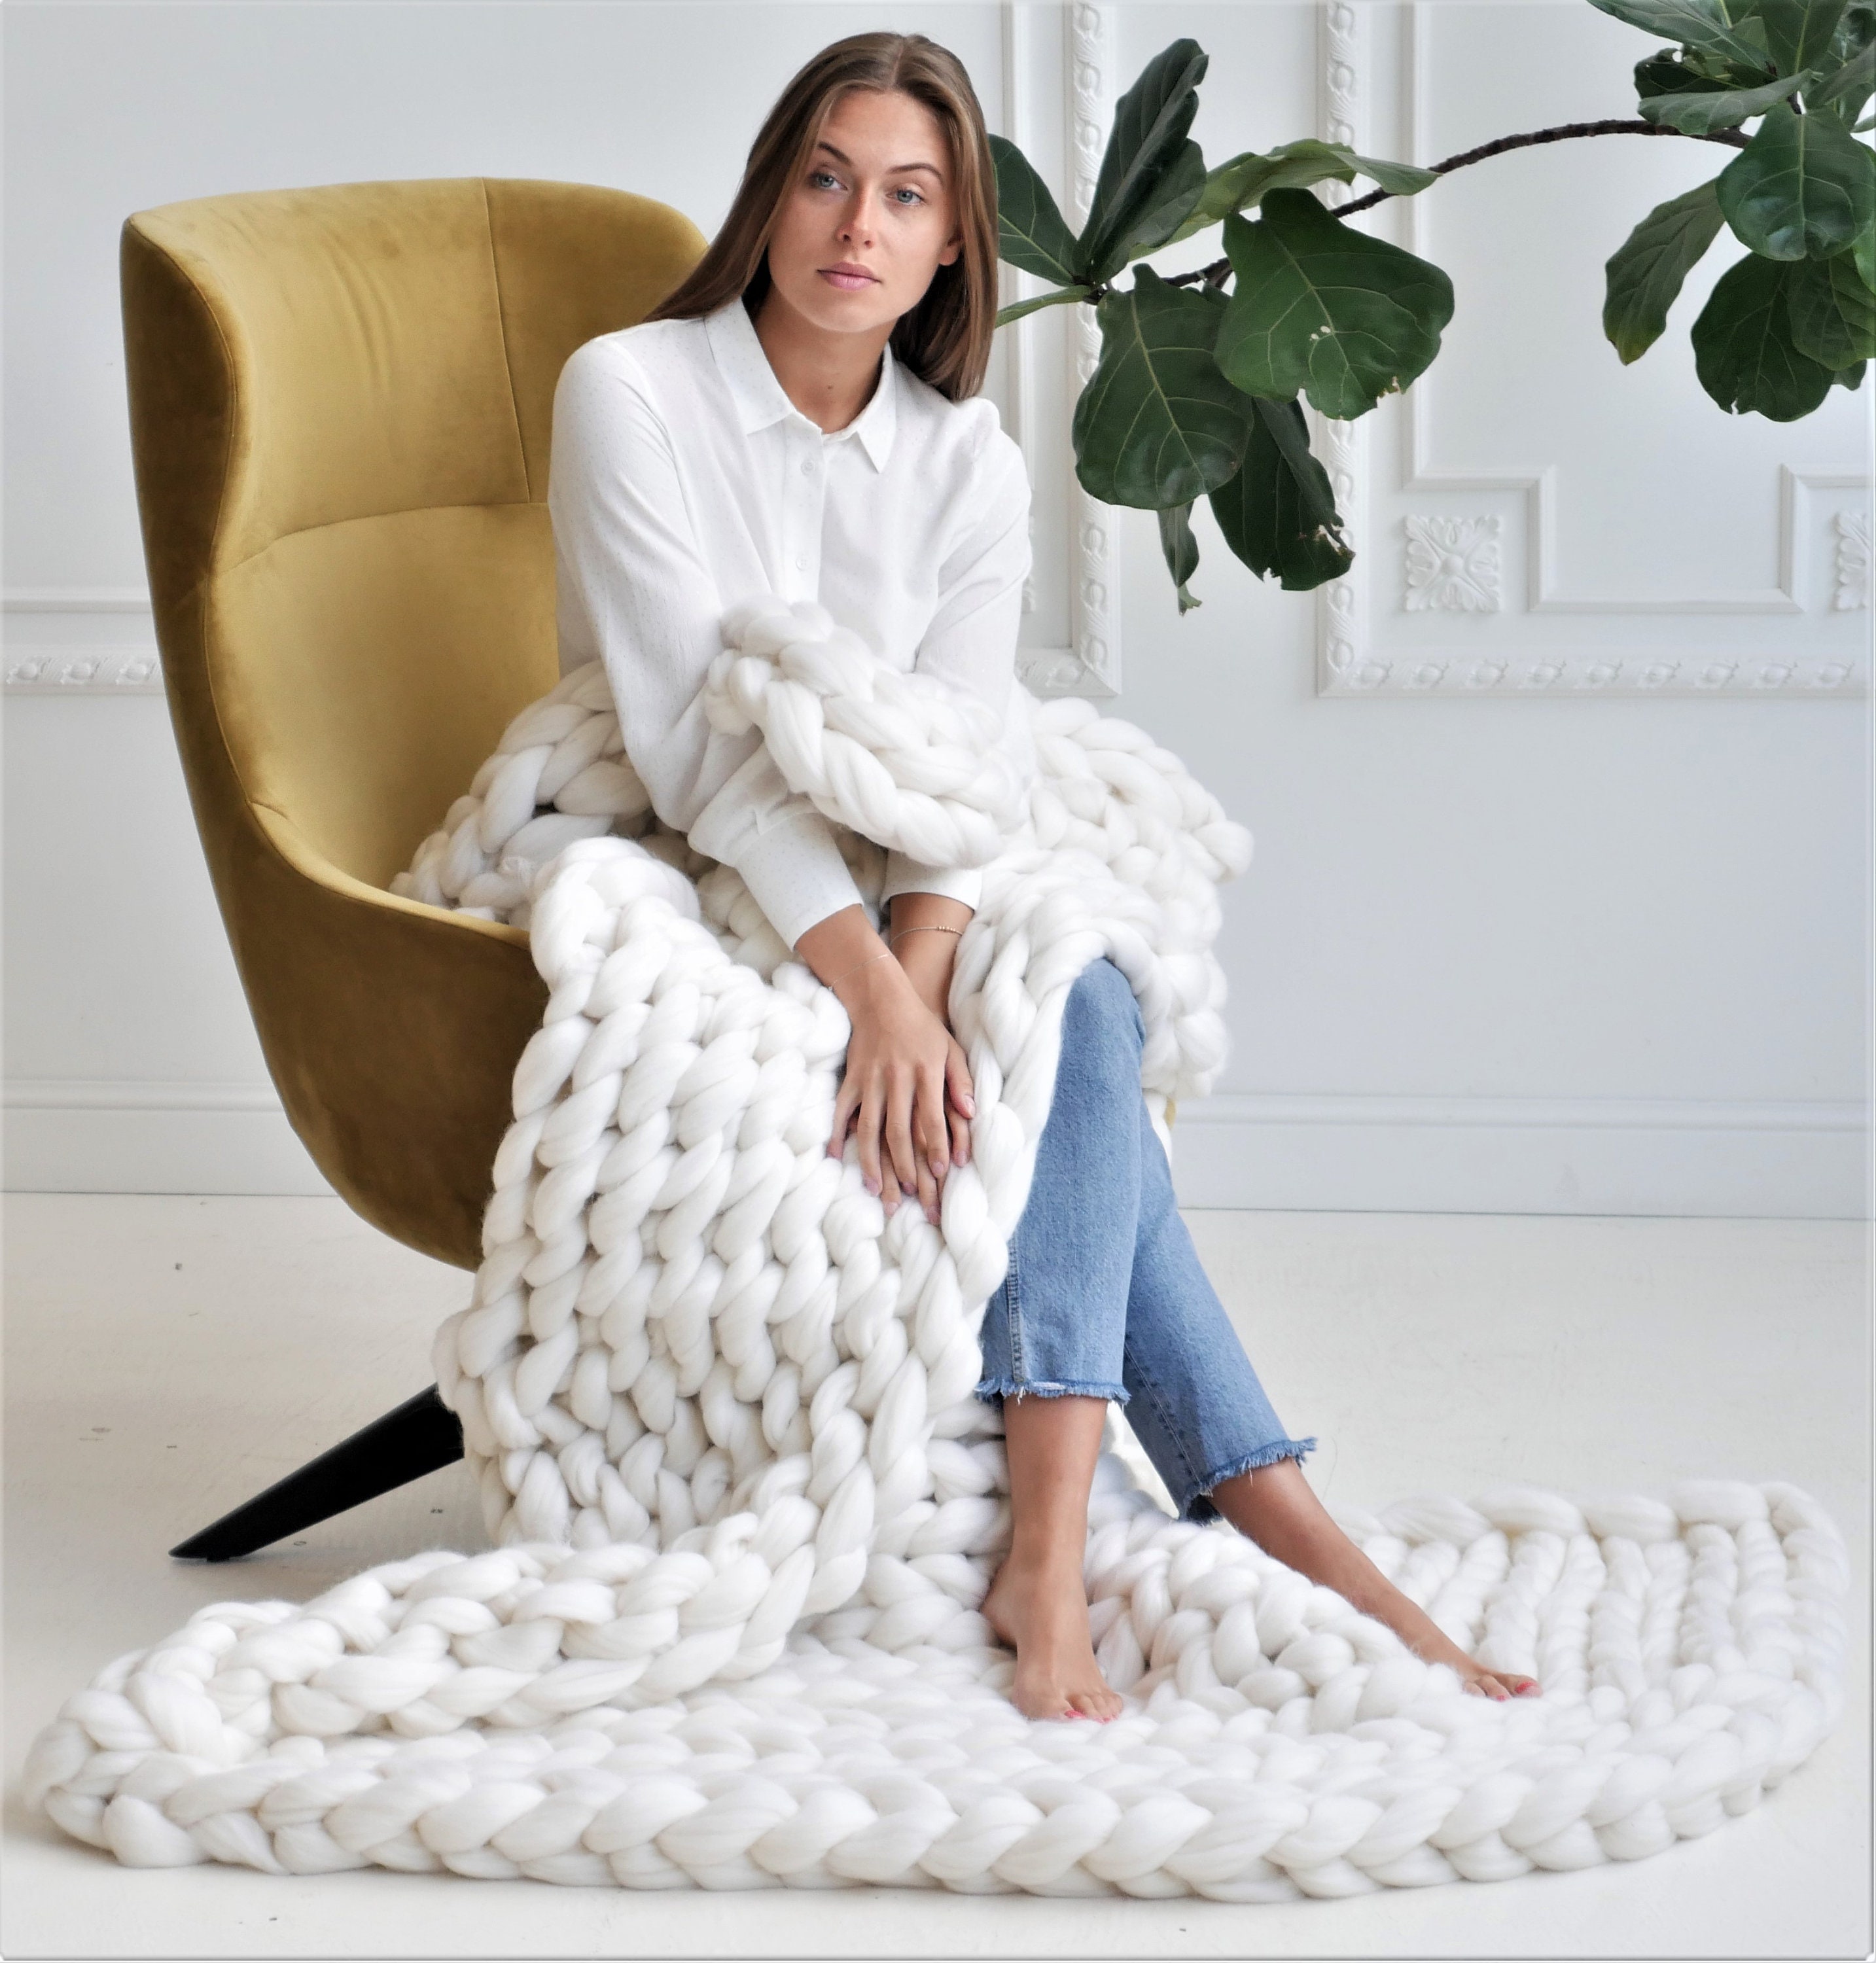 DIY Large Merino Throw Blanket Kit 35×70 – MANUOSH